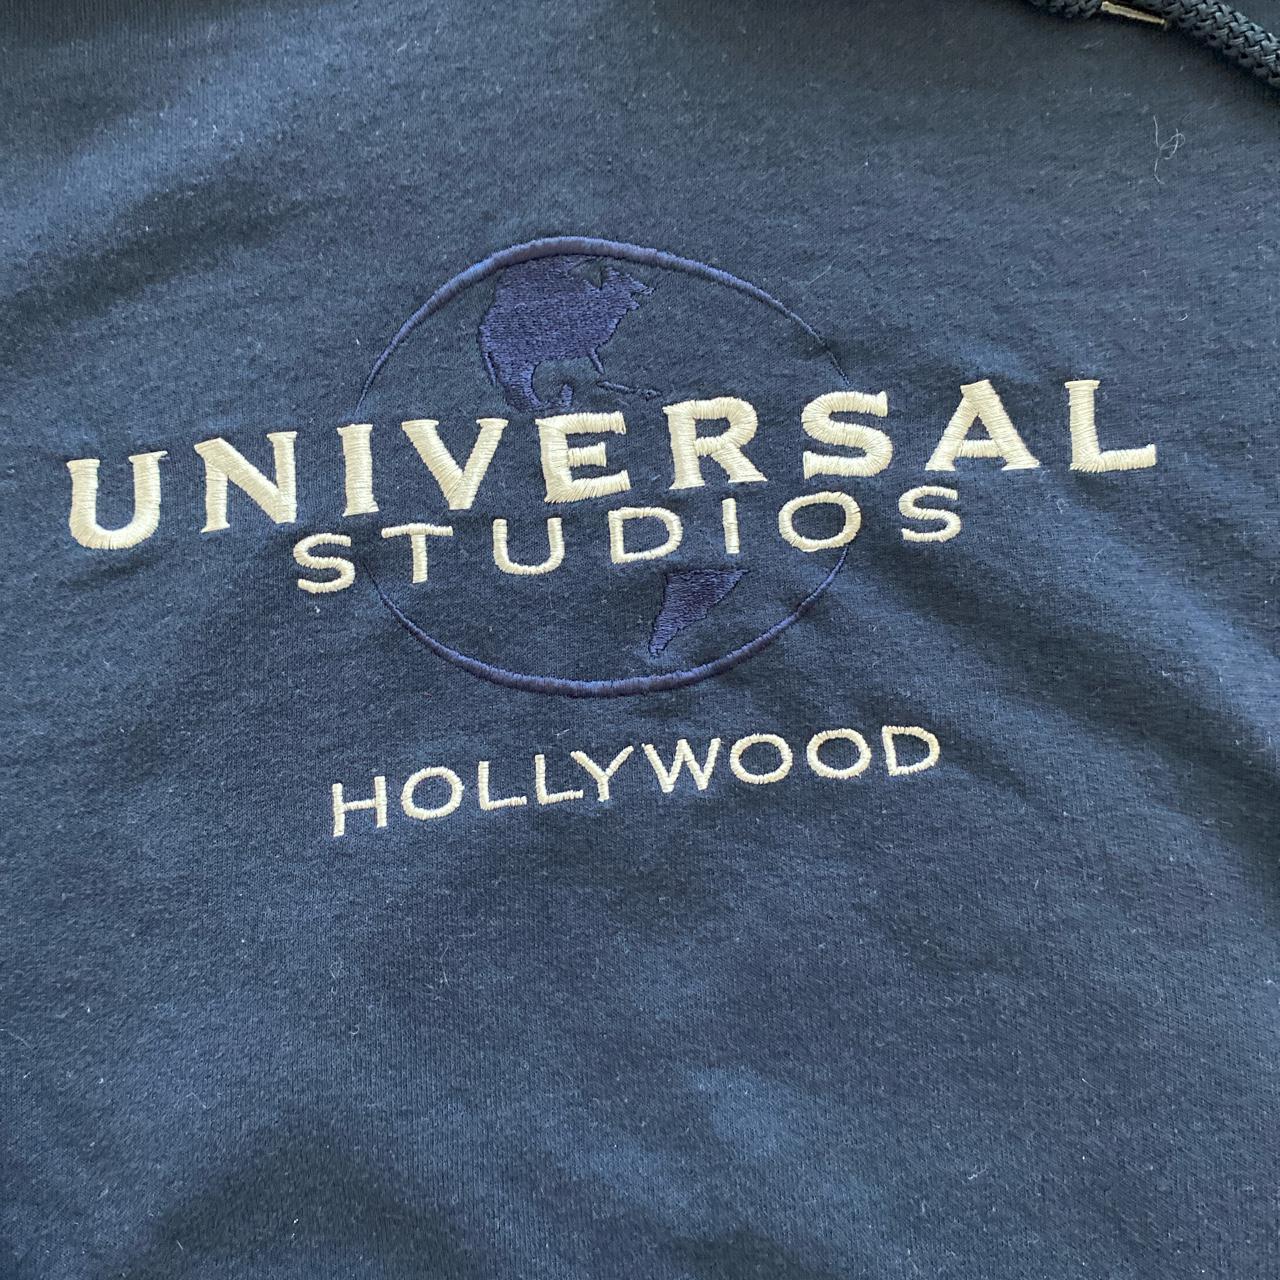 Universal studios Hollywood hoodie size M 21 1/2 x... - Depop